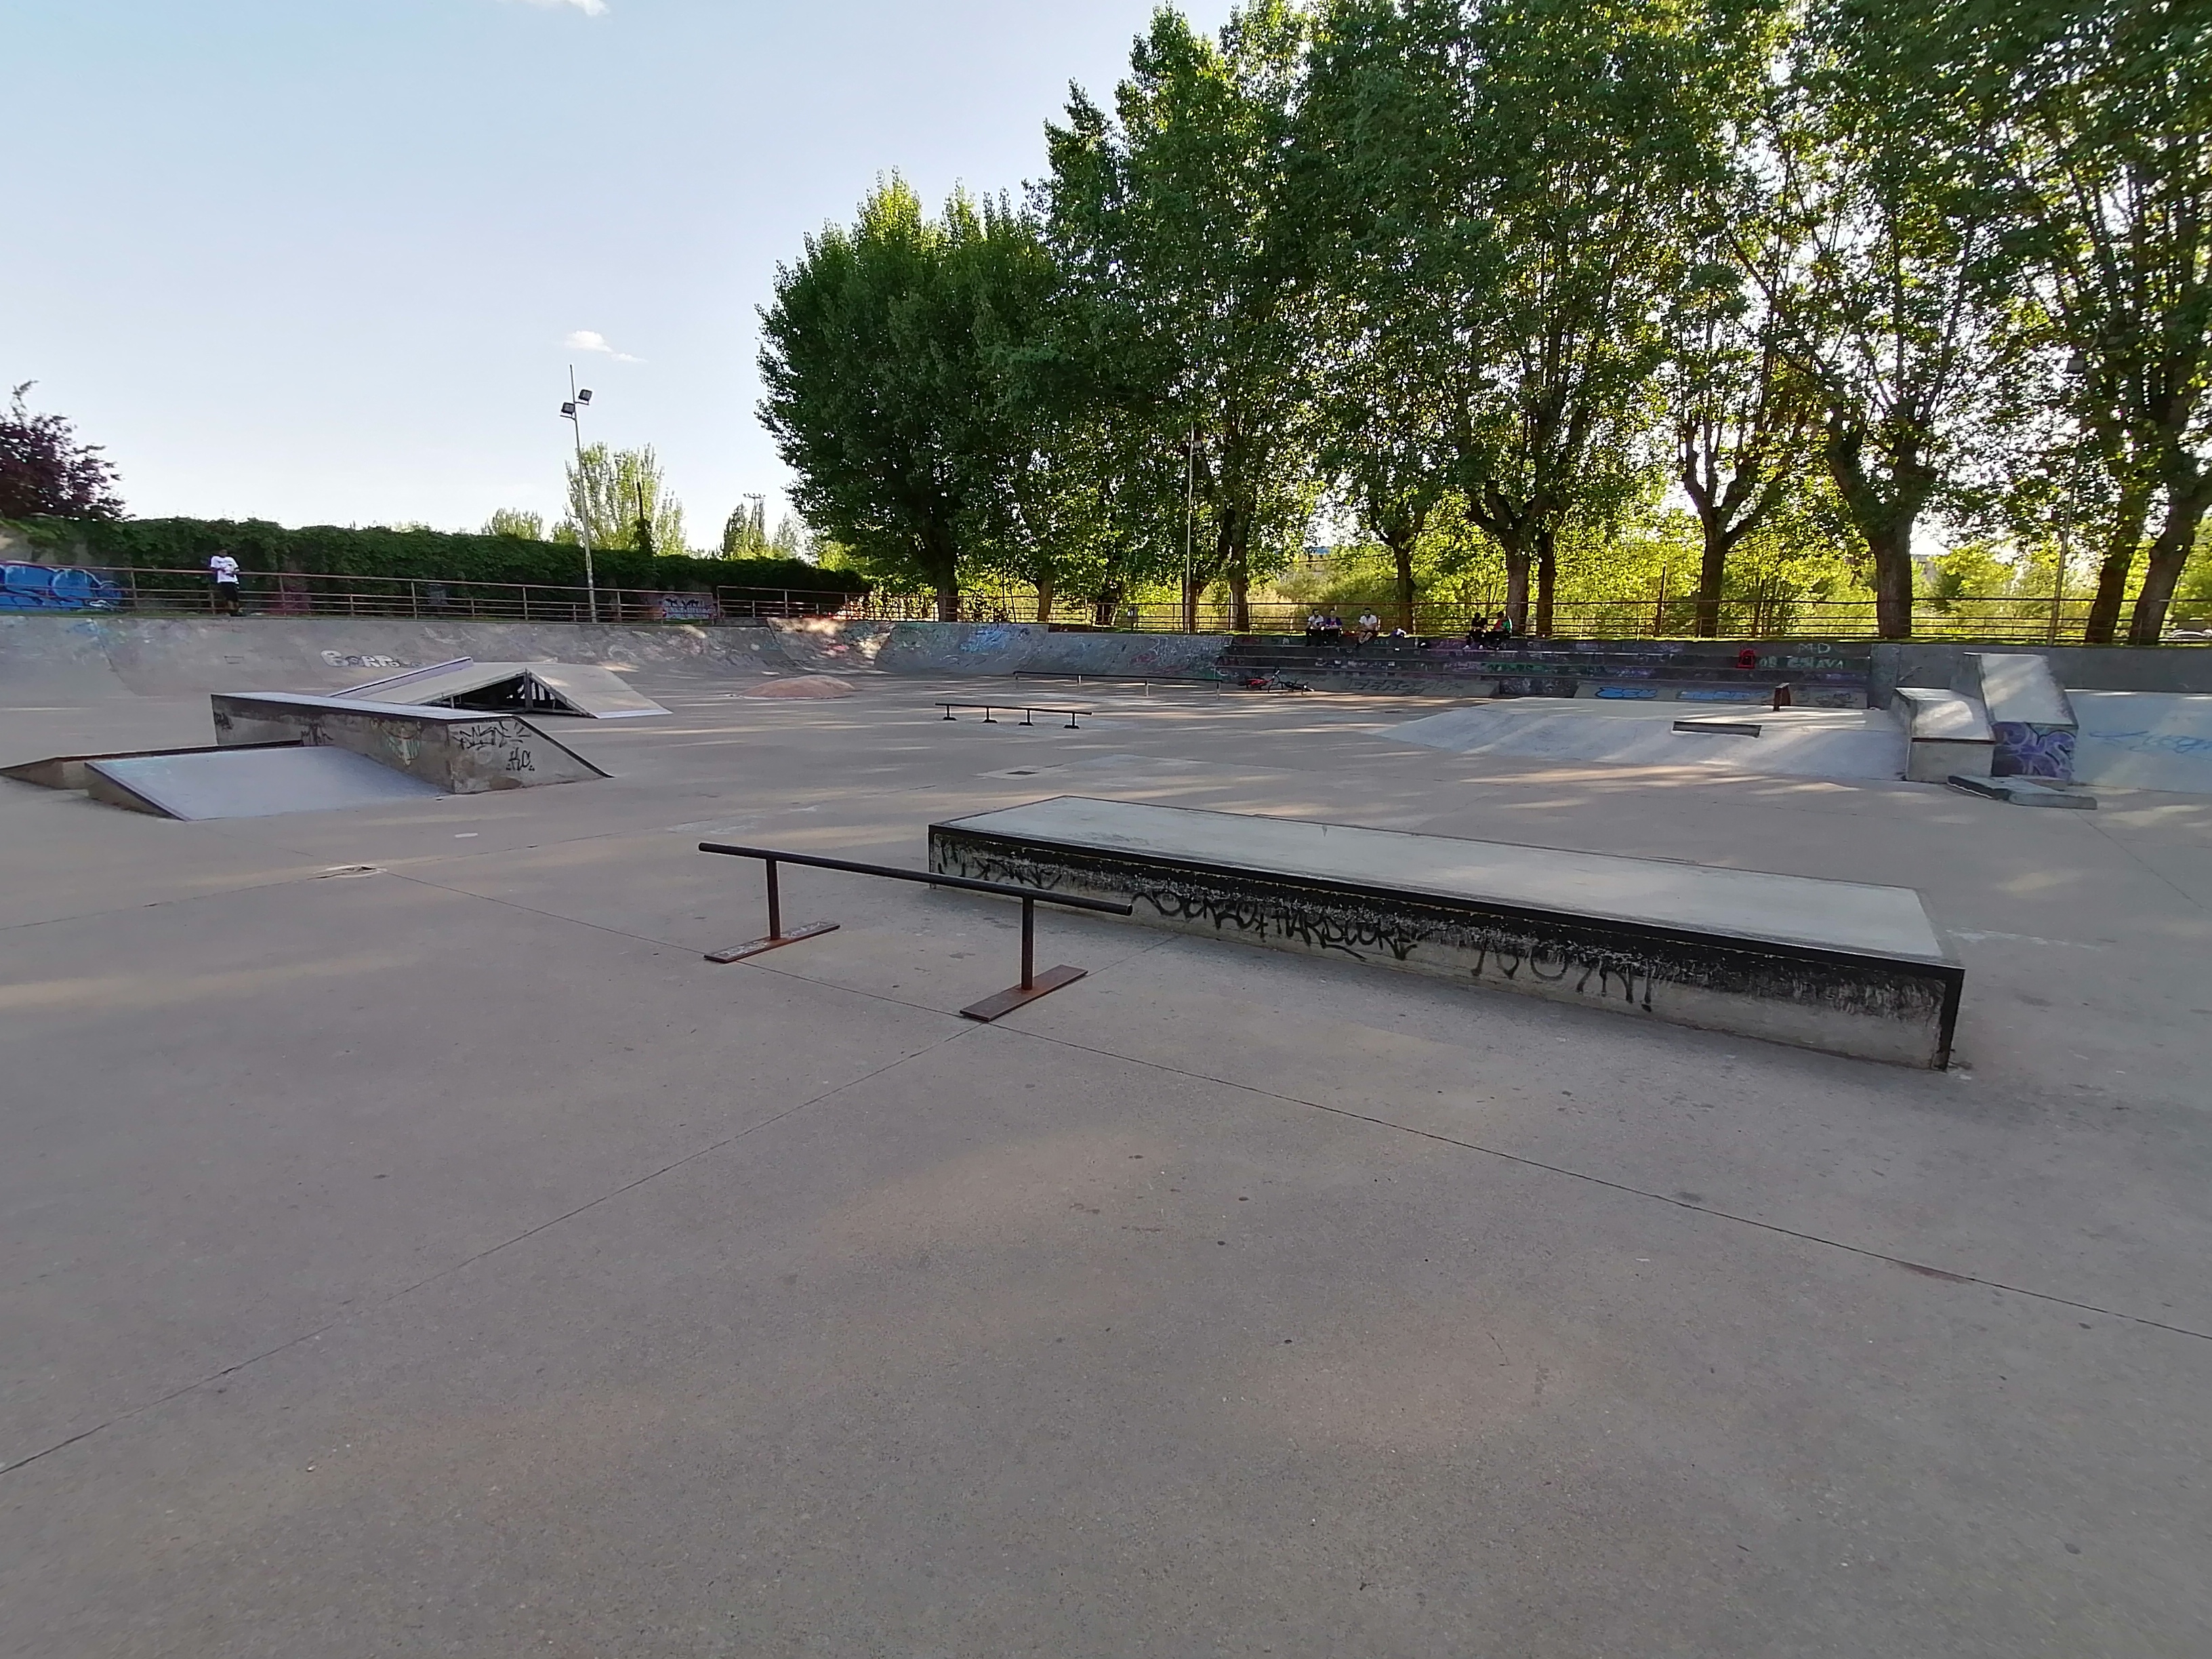 León skatepark